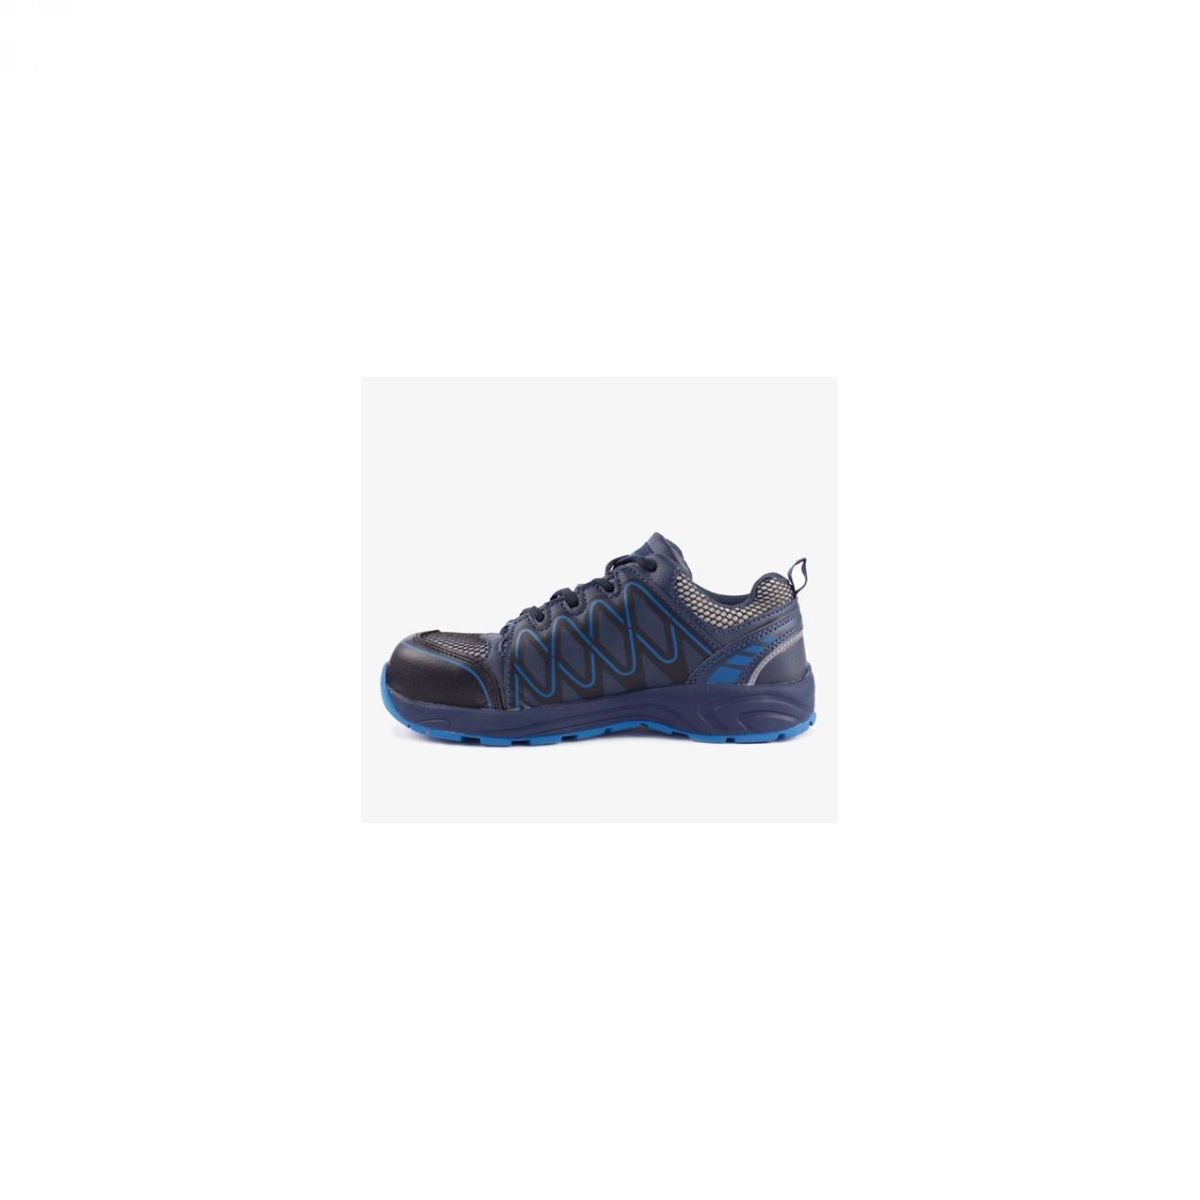 Zaštitna cipela VISPER S1 plavo - crna